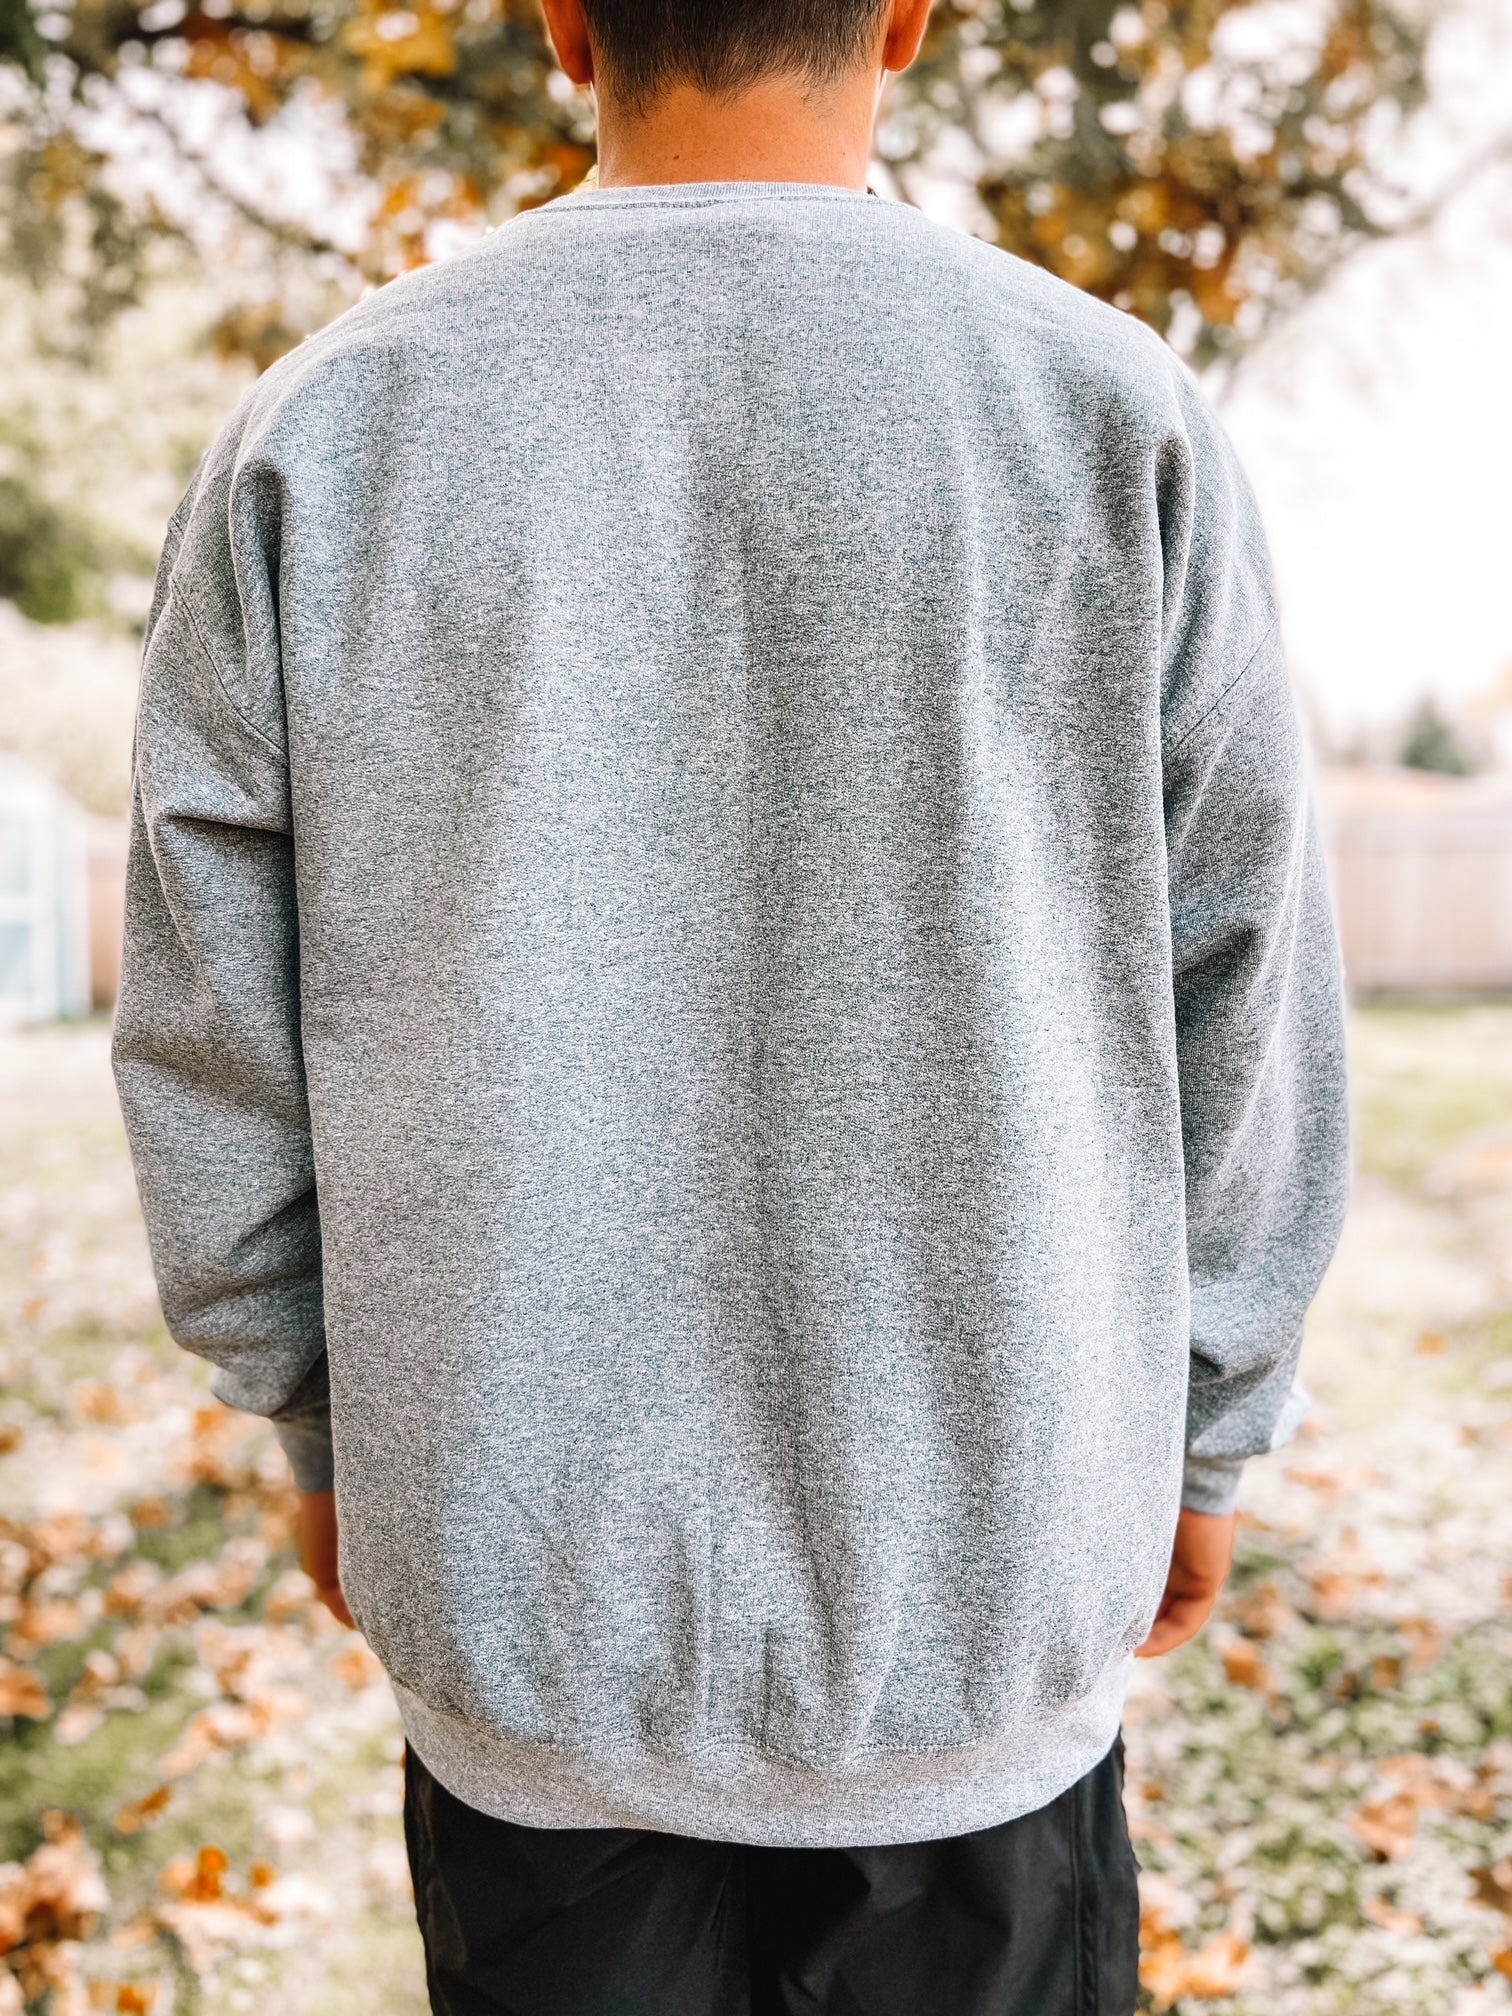 Back of crewneck sweatshirt in charcoal gray.